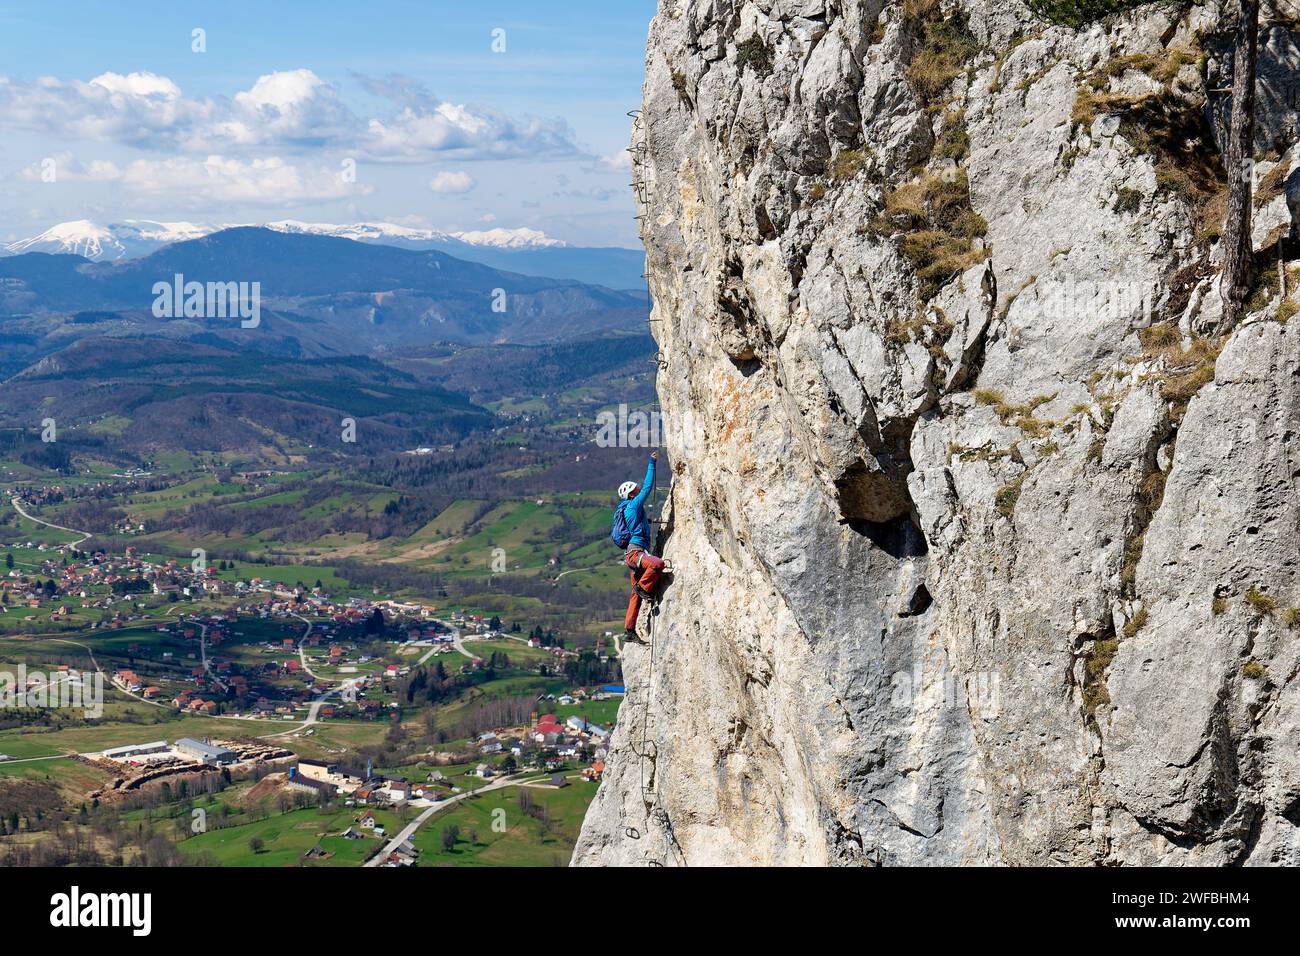 Une personne grimpant sur un itinéraire via ferrata sur un mur vertical de roche. La vie sportive en montagne. Vie active. Grimpeur utilisant l'équipement approprié pour la sécurité. Banque D'Images